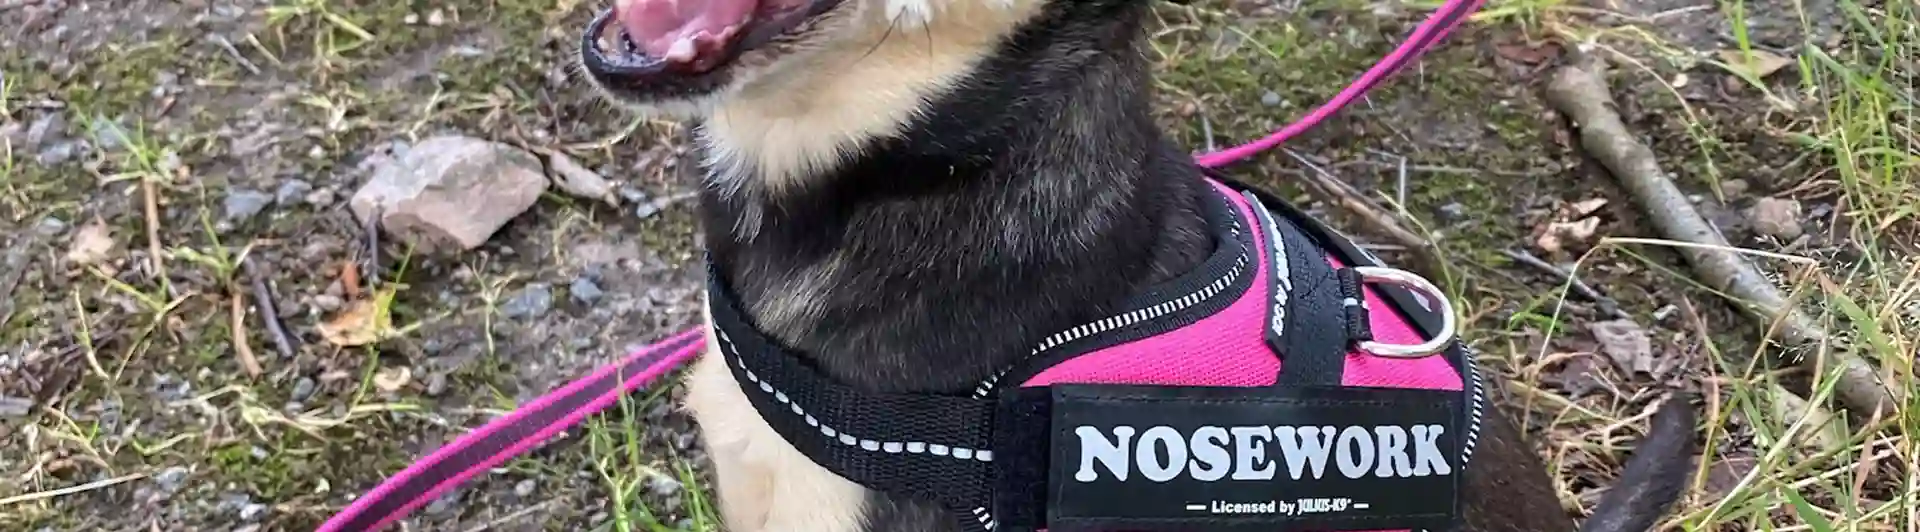 Hund med nose work sele